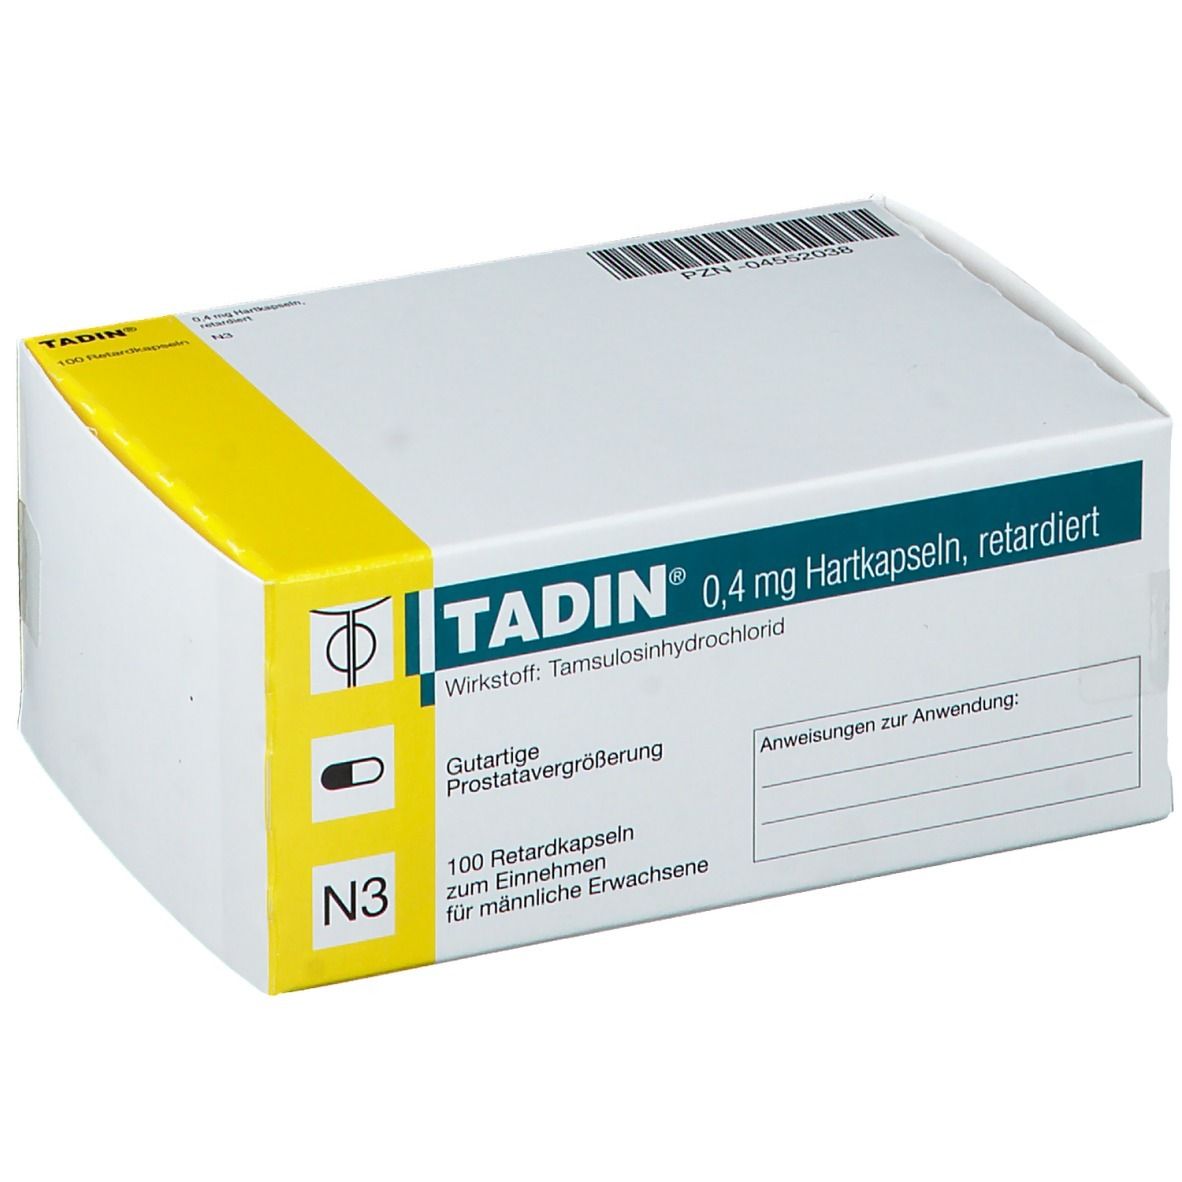 TADIN® 0,4 mg